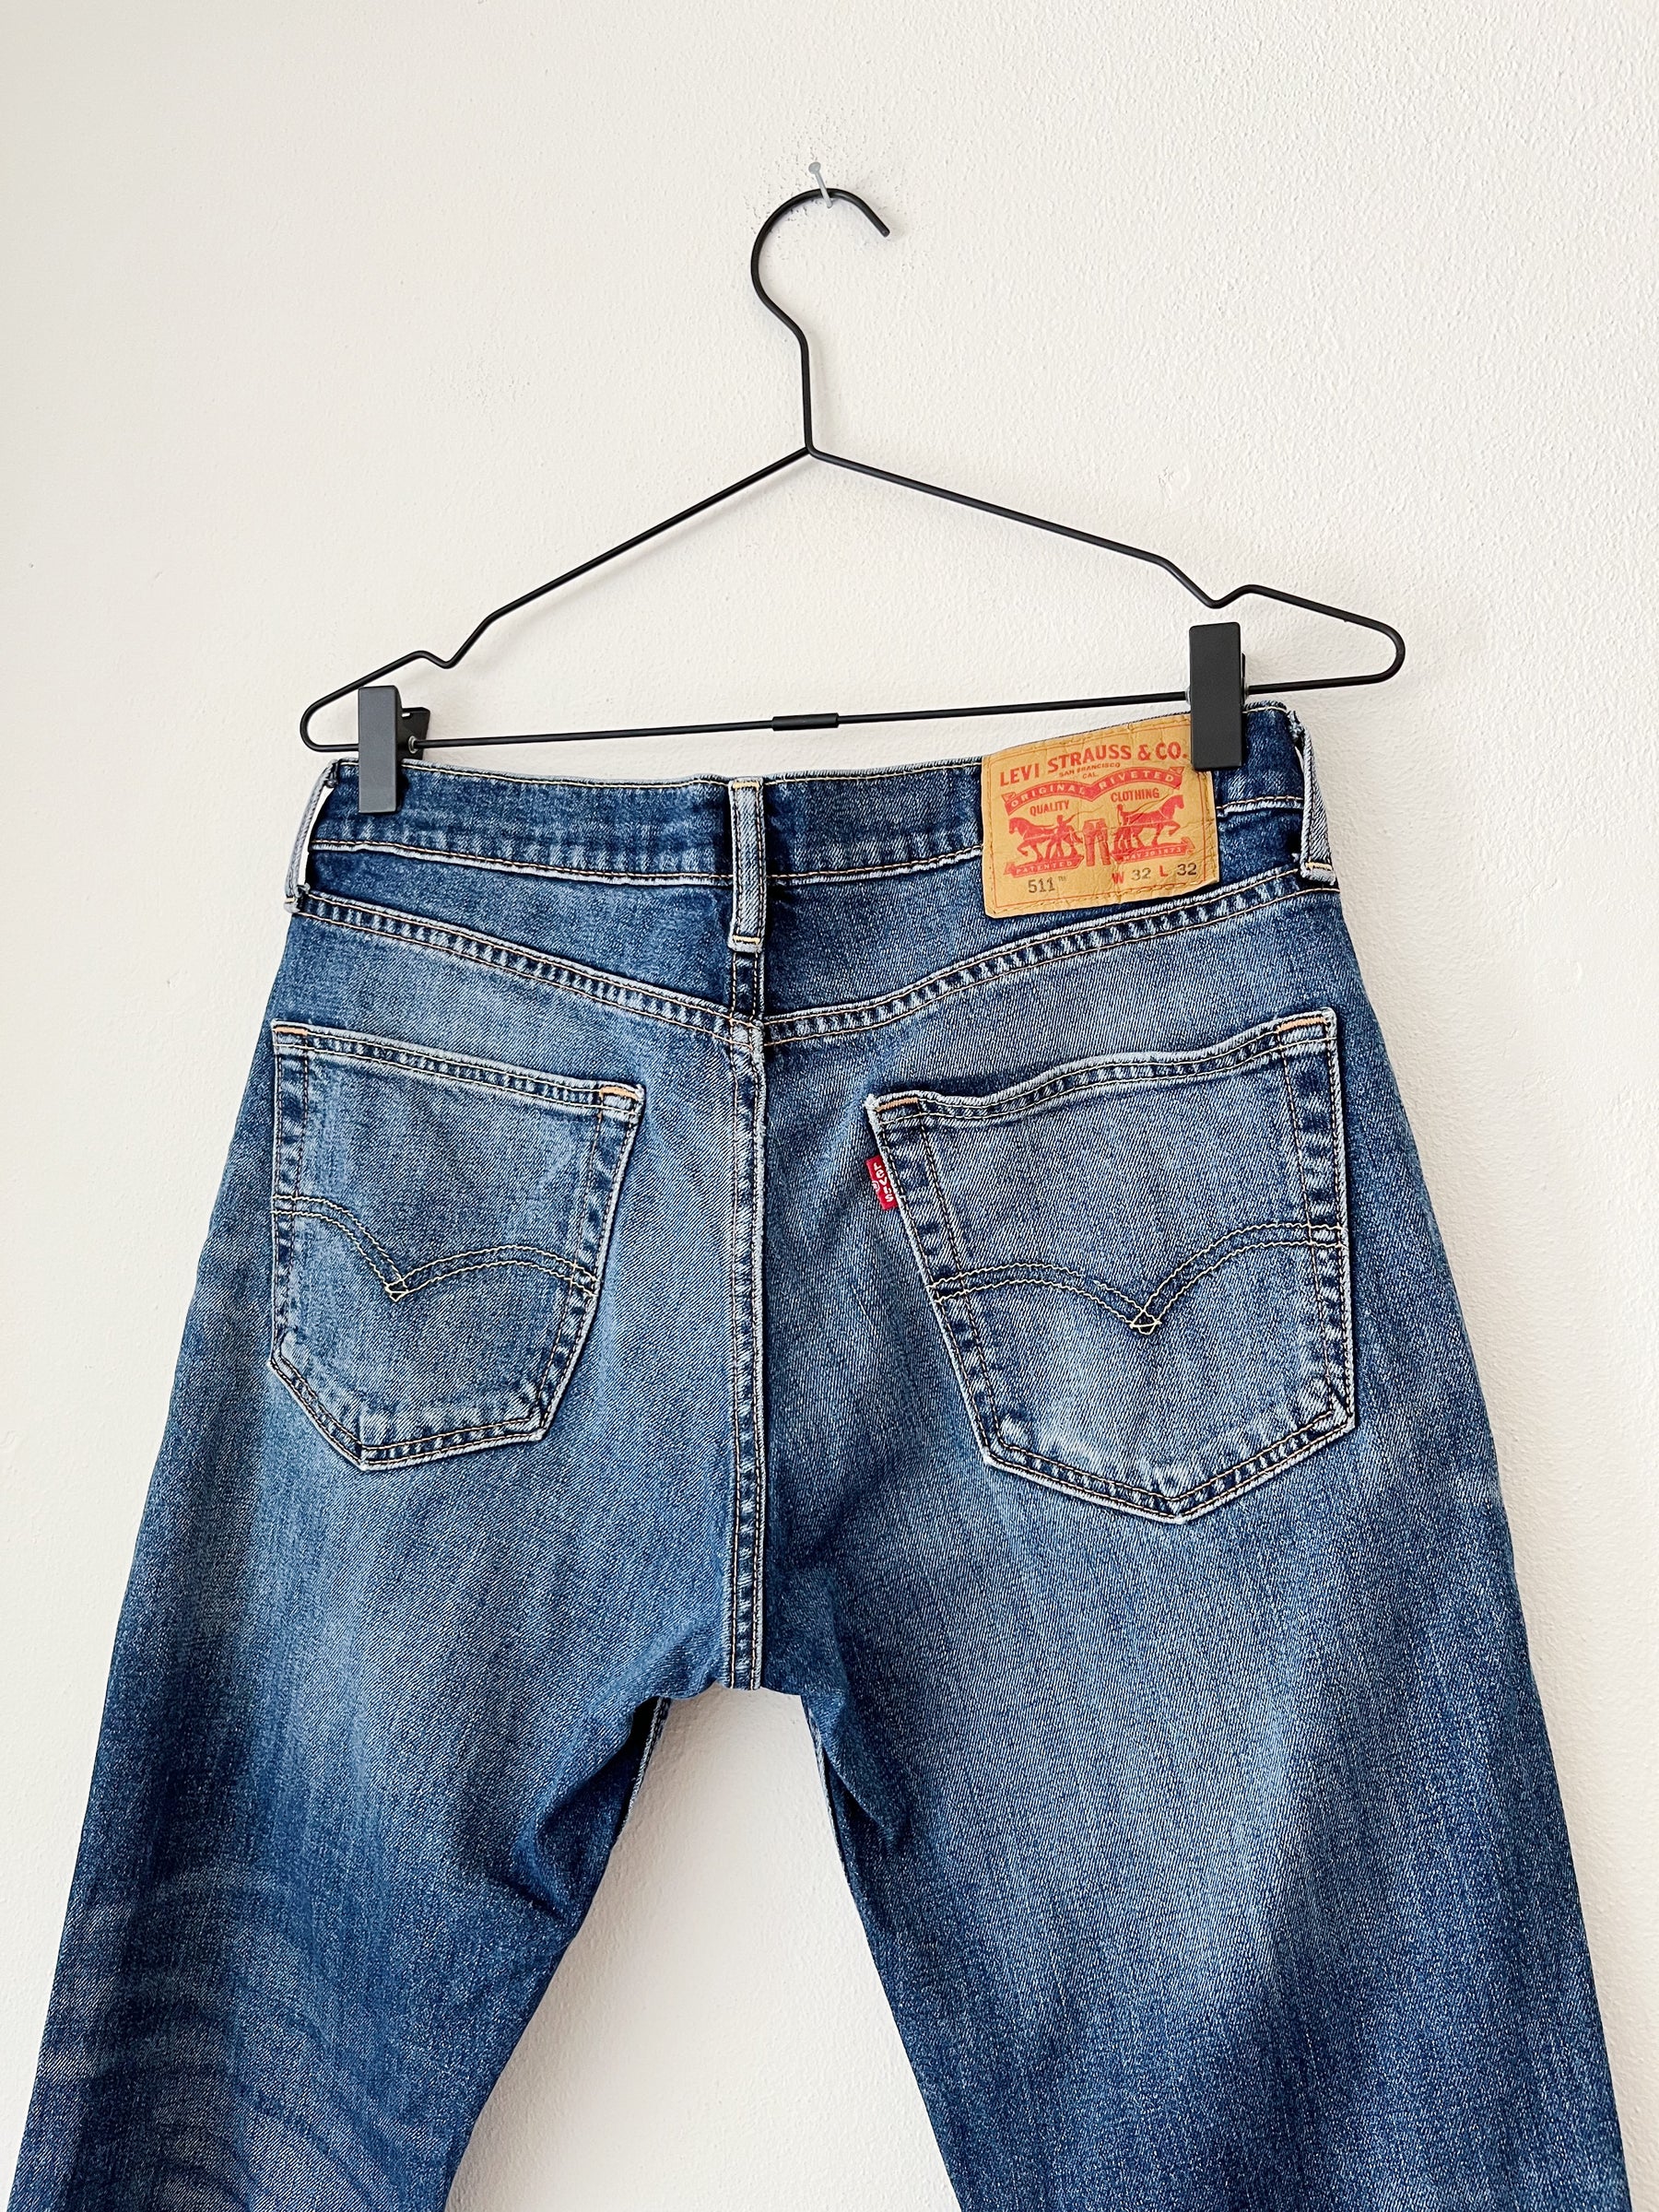 Levis jeans / &Lu. Fashion. Shop secondhand